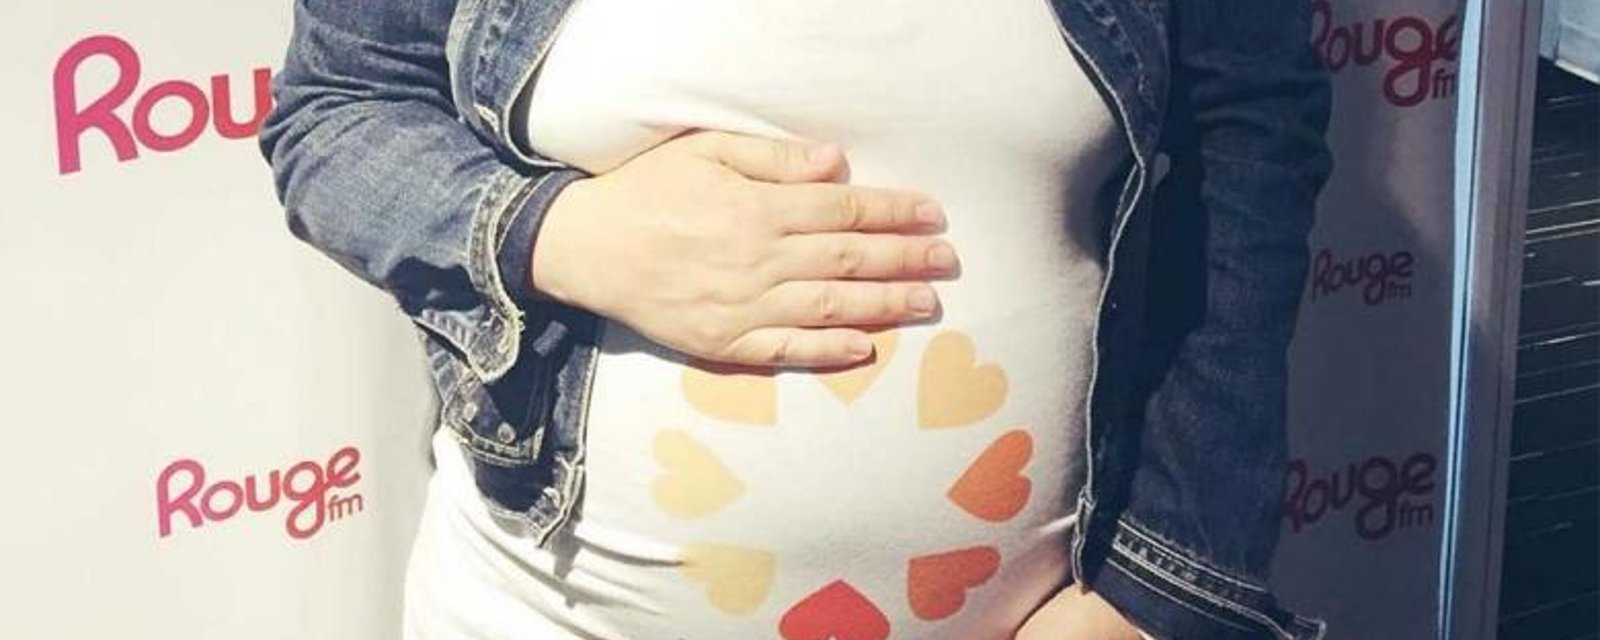 Une personnalité québécoise annonce sa grossesse sur Instagram!